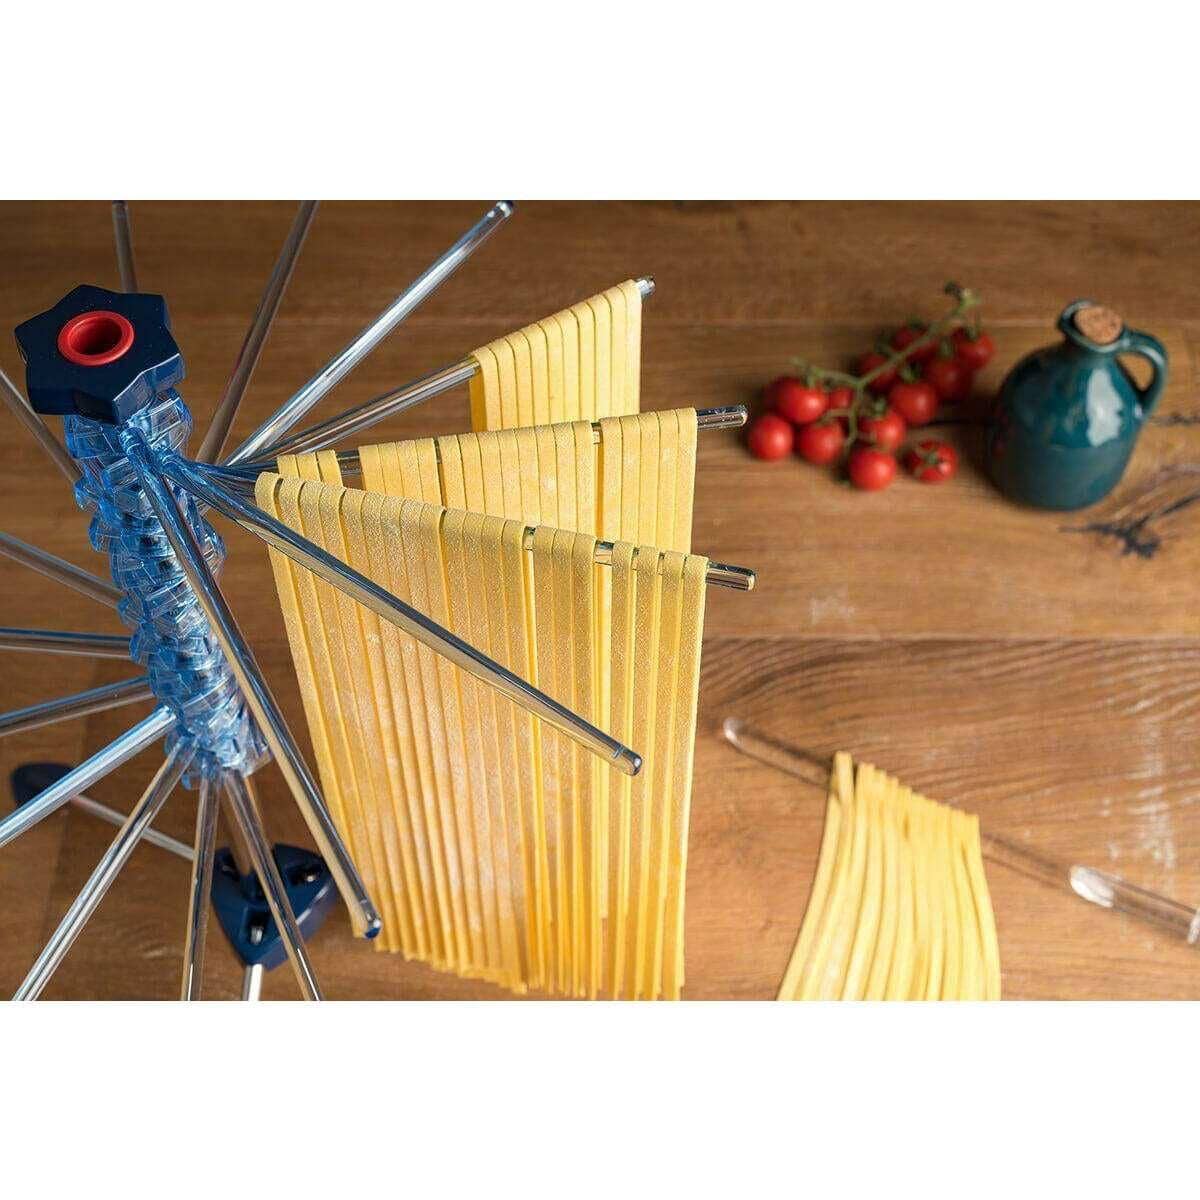 Marcato Tacapasta - Pasta Drying Rack - Pasta Kitchen (tutto pasta)